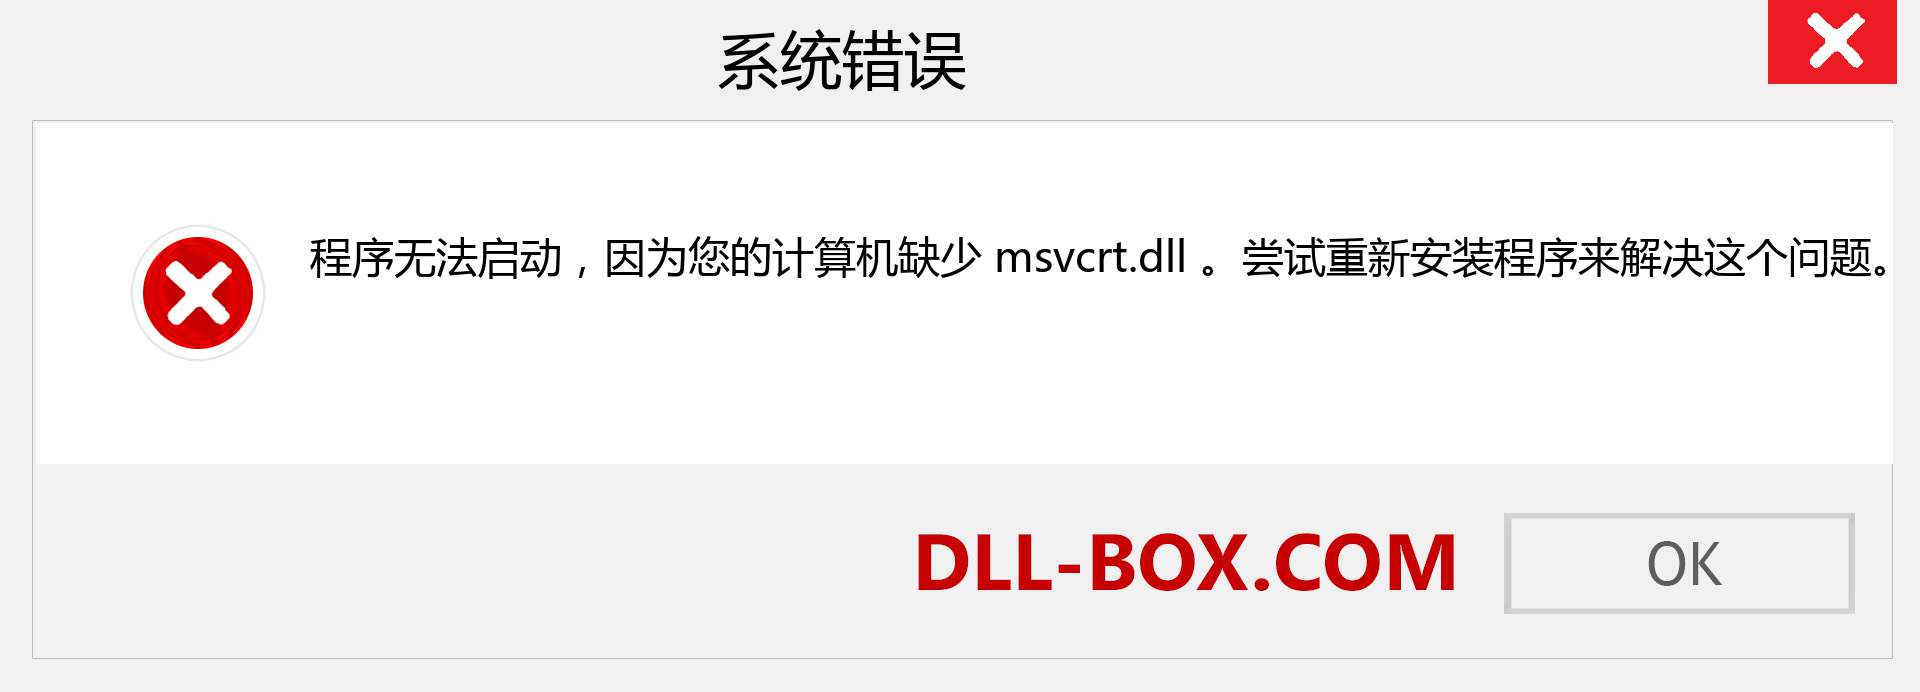 msvcrt.dll 文件丢失？。 适用于 Windows 7、8、10 的下载 - 修复 Windows、照片、图像上的 msvcrt dll 丢失错误